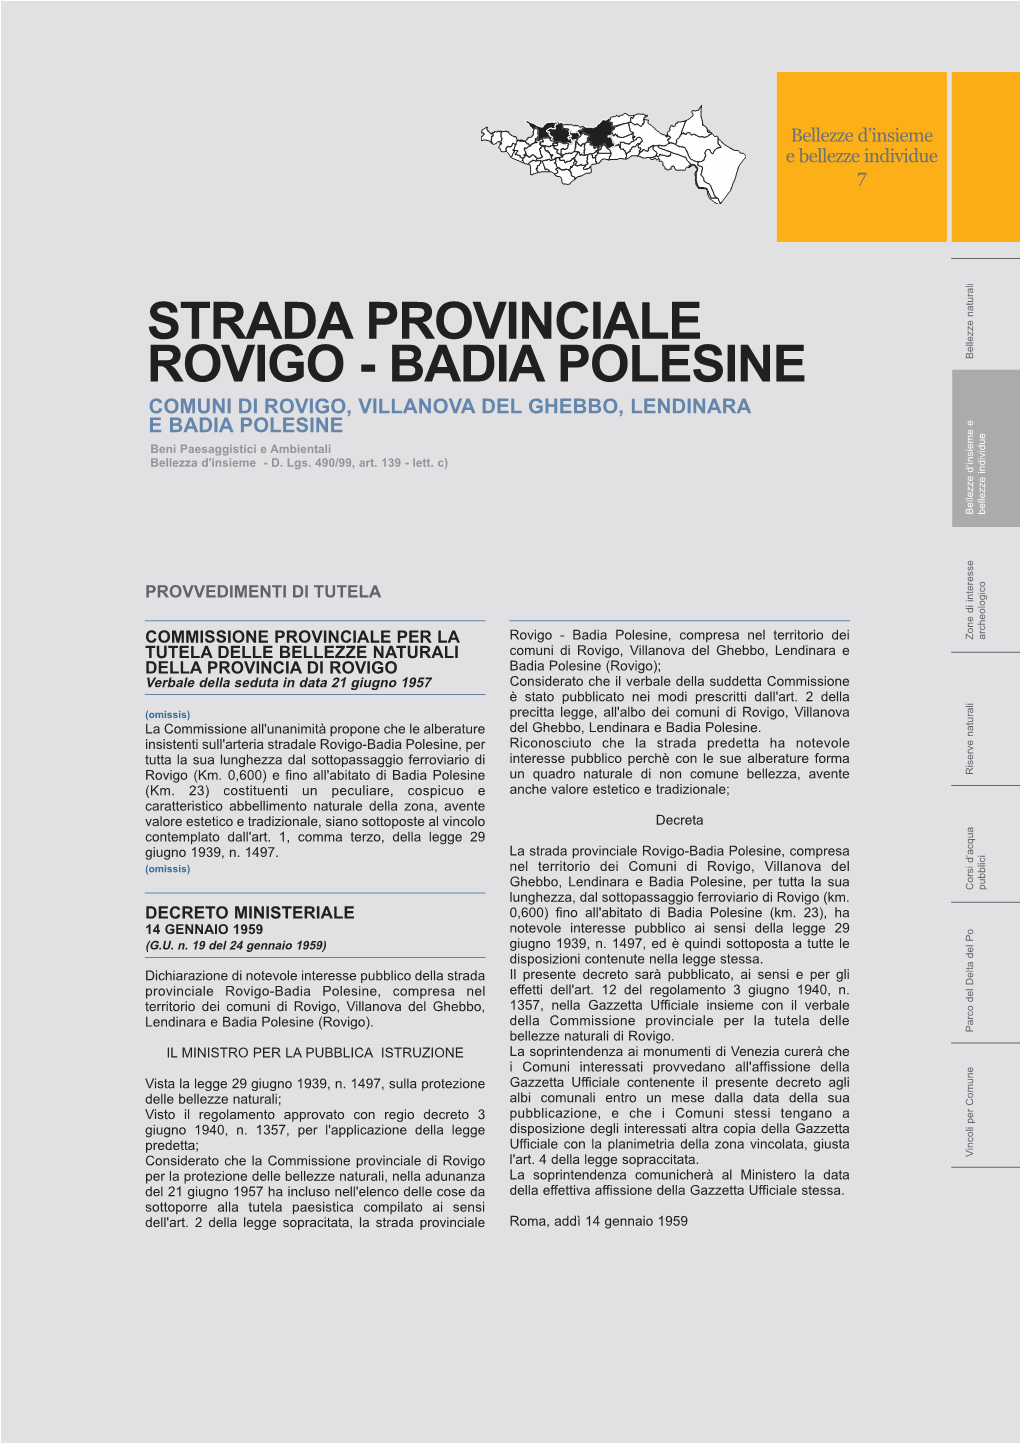 STRADA PROVINCIALE ROVIGO - BADIA POLESINE Rappresentazione Del Vincolo Su ORTOFOTO - Scala 1:100000